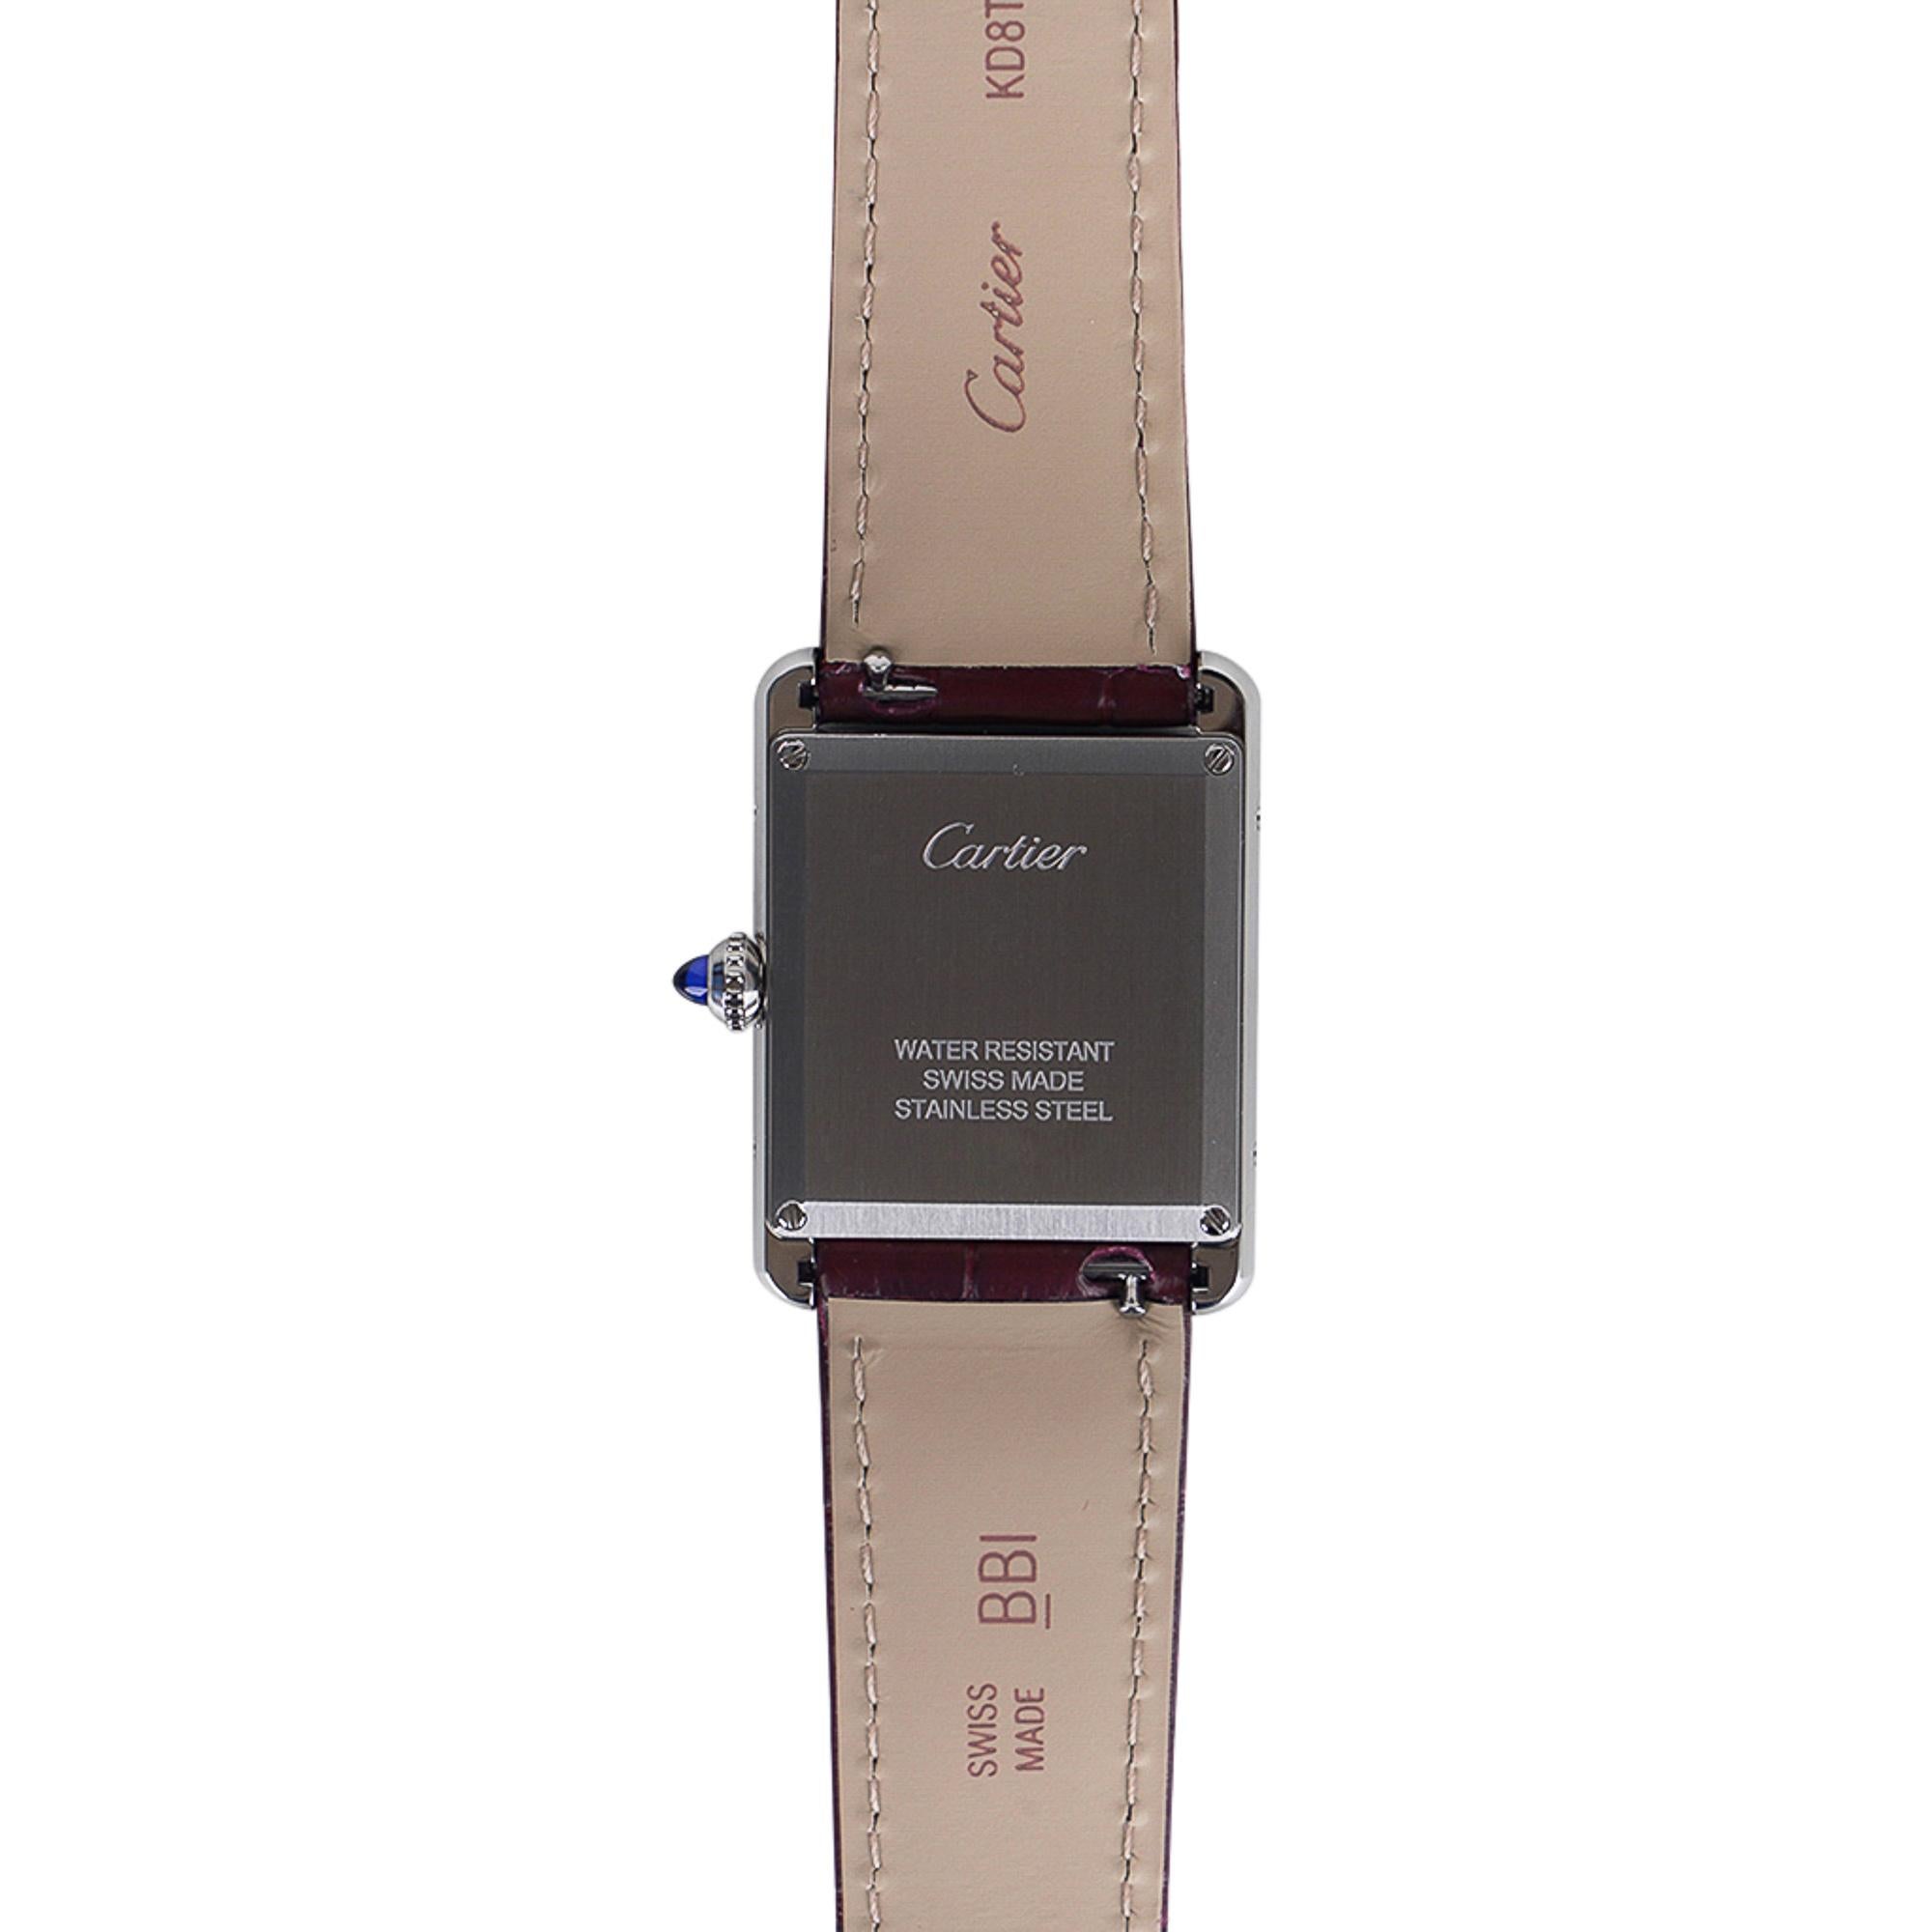 Cartier Tank Must de Cartier Watch Burgundy 2021 Limited Edition New w/ Box 2